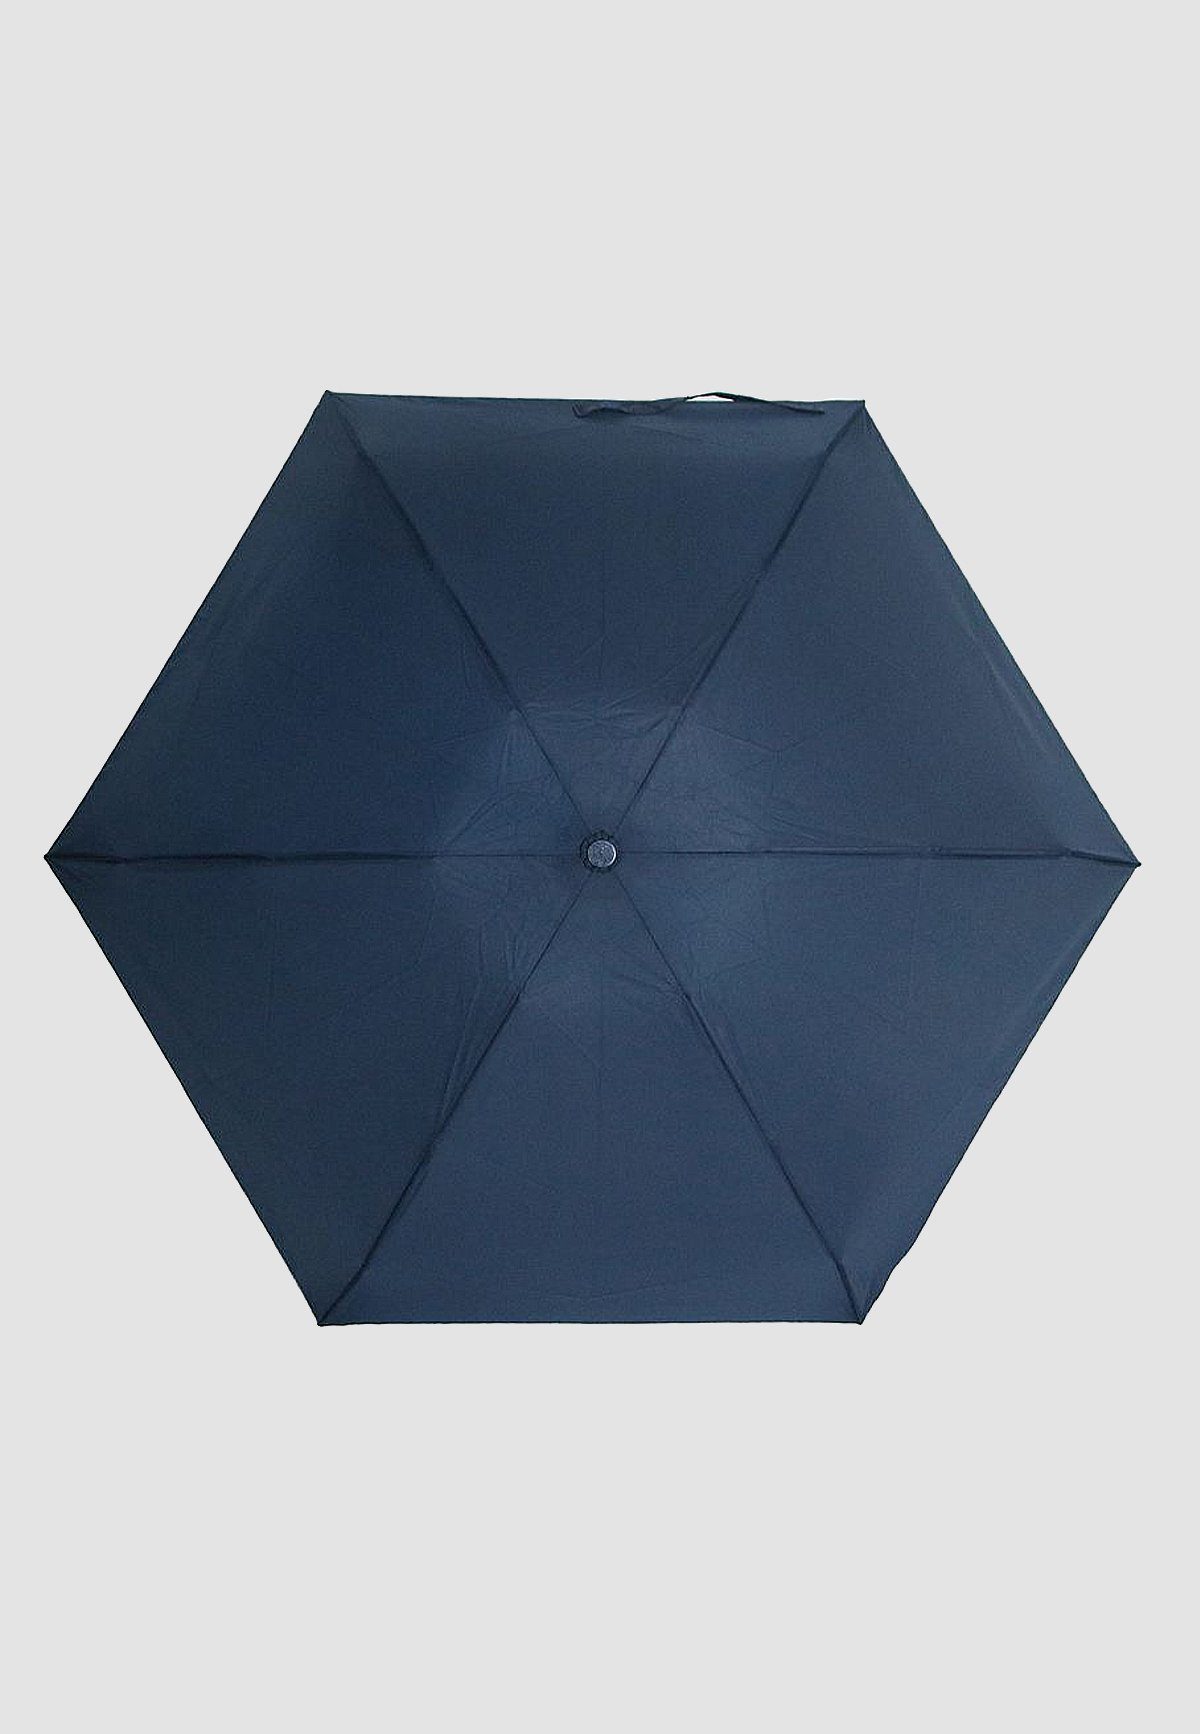 Taschen Regenschirm Blau Ausführung, 4683 Leichte Taschenregenschirm in Kleiner ANELY